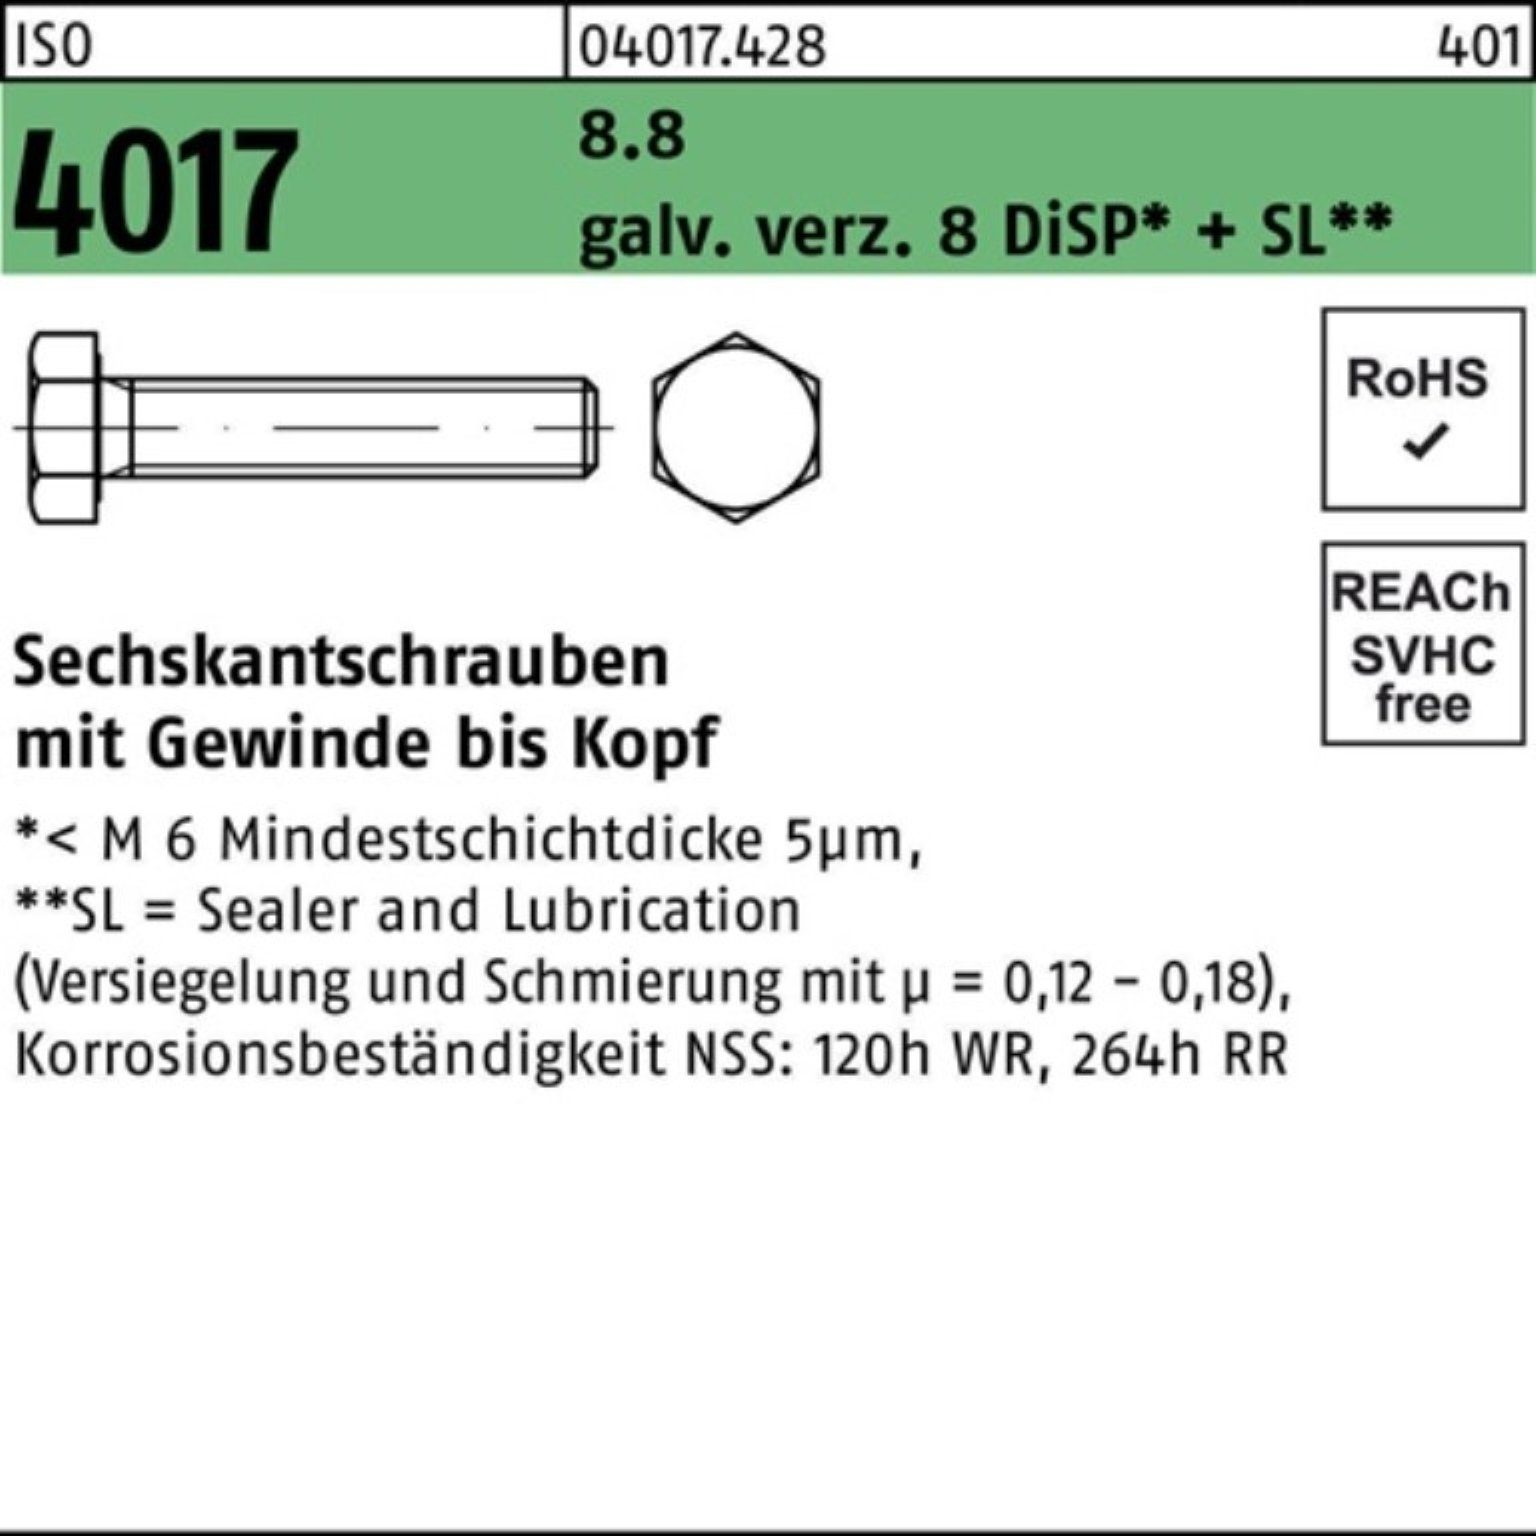 Bufab Sechskantschraube 200er 10 M8x VG 8.8 4017 ISO galv.verz. DiSP+ Sechskantschraube 8 Pack